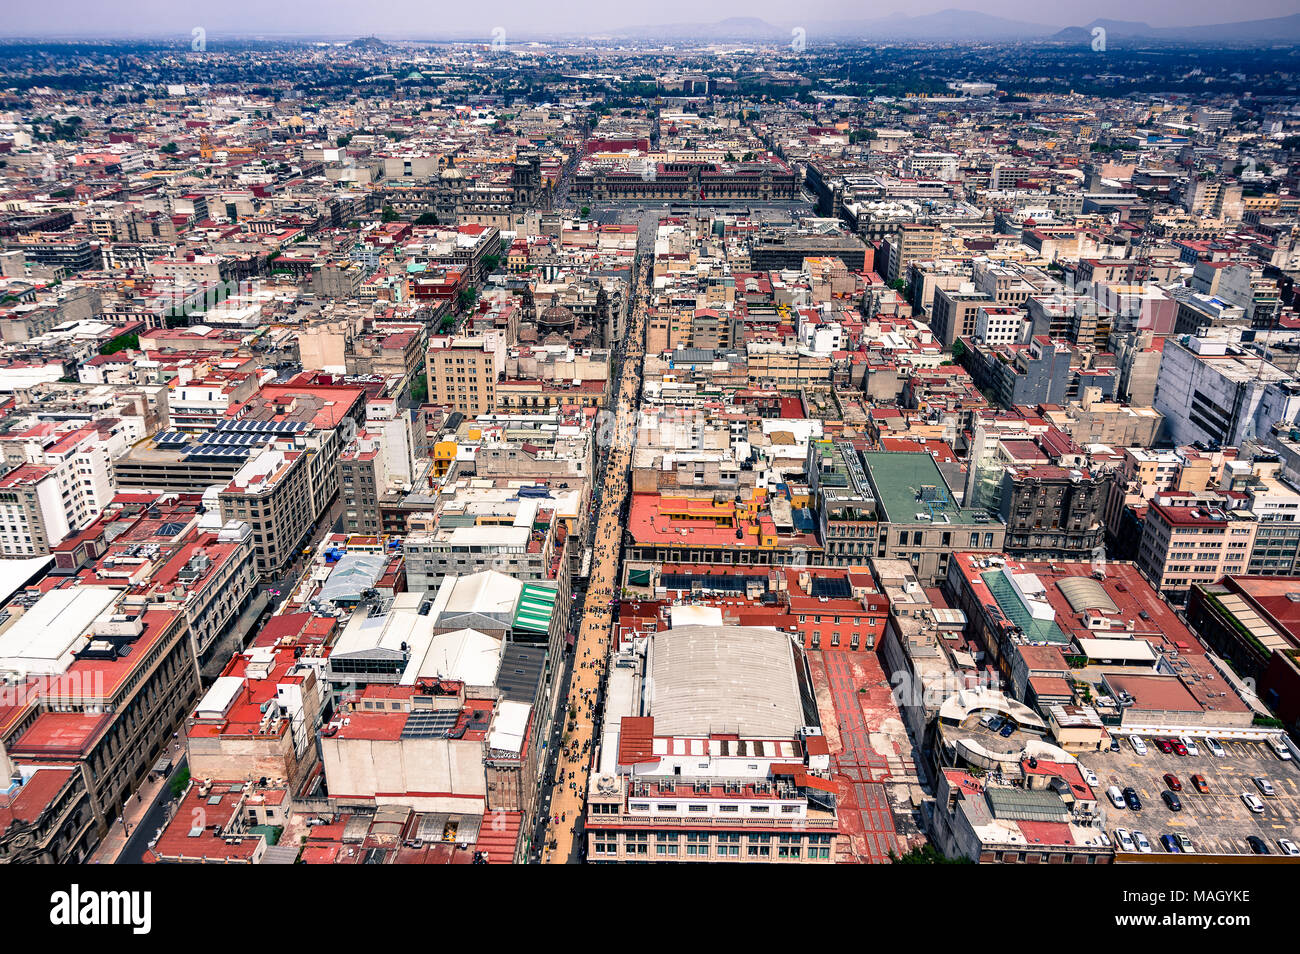 Una vista de la Ciudad de México desde la torre de América Latina / Anu vista del Torre Latinoamericana en la Ciudad de México Foto de stock